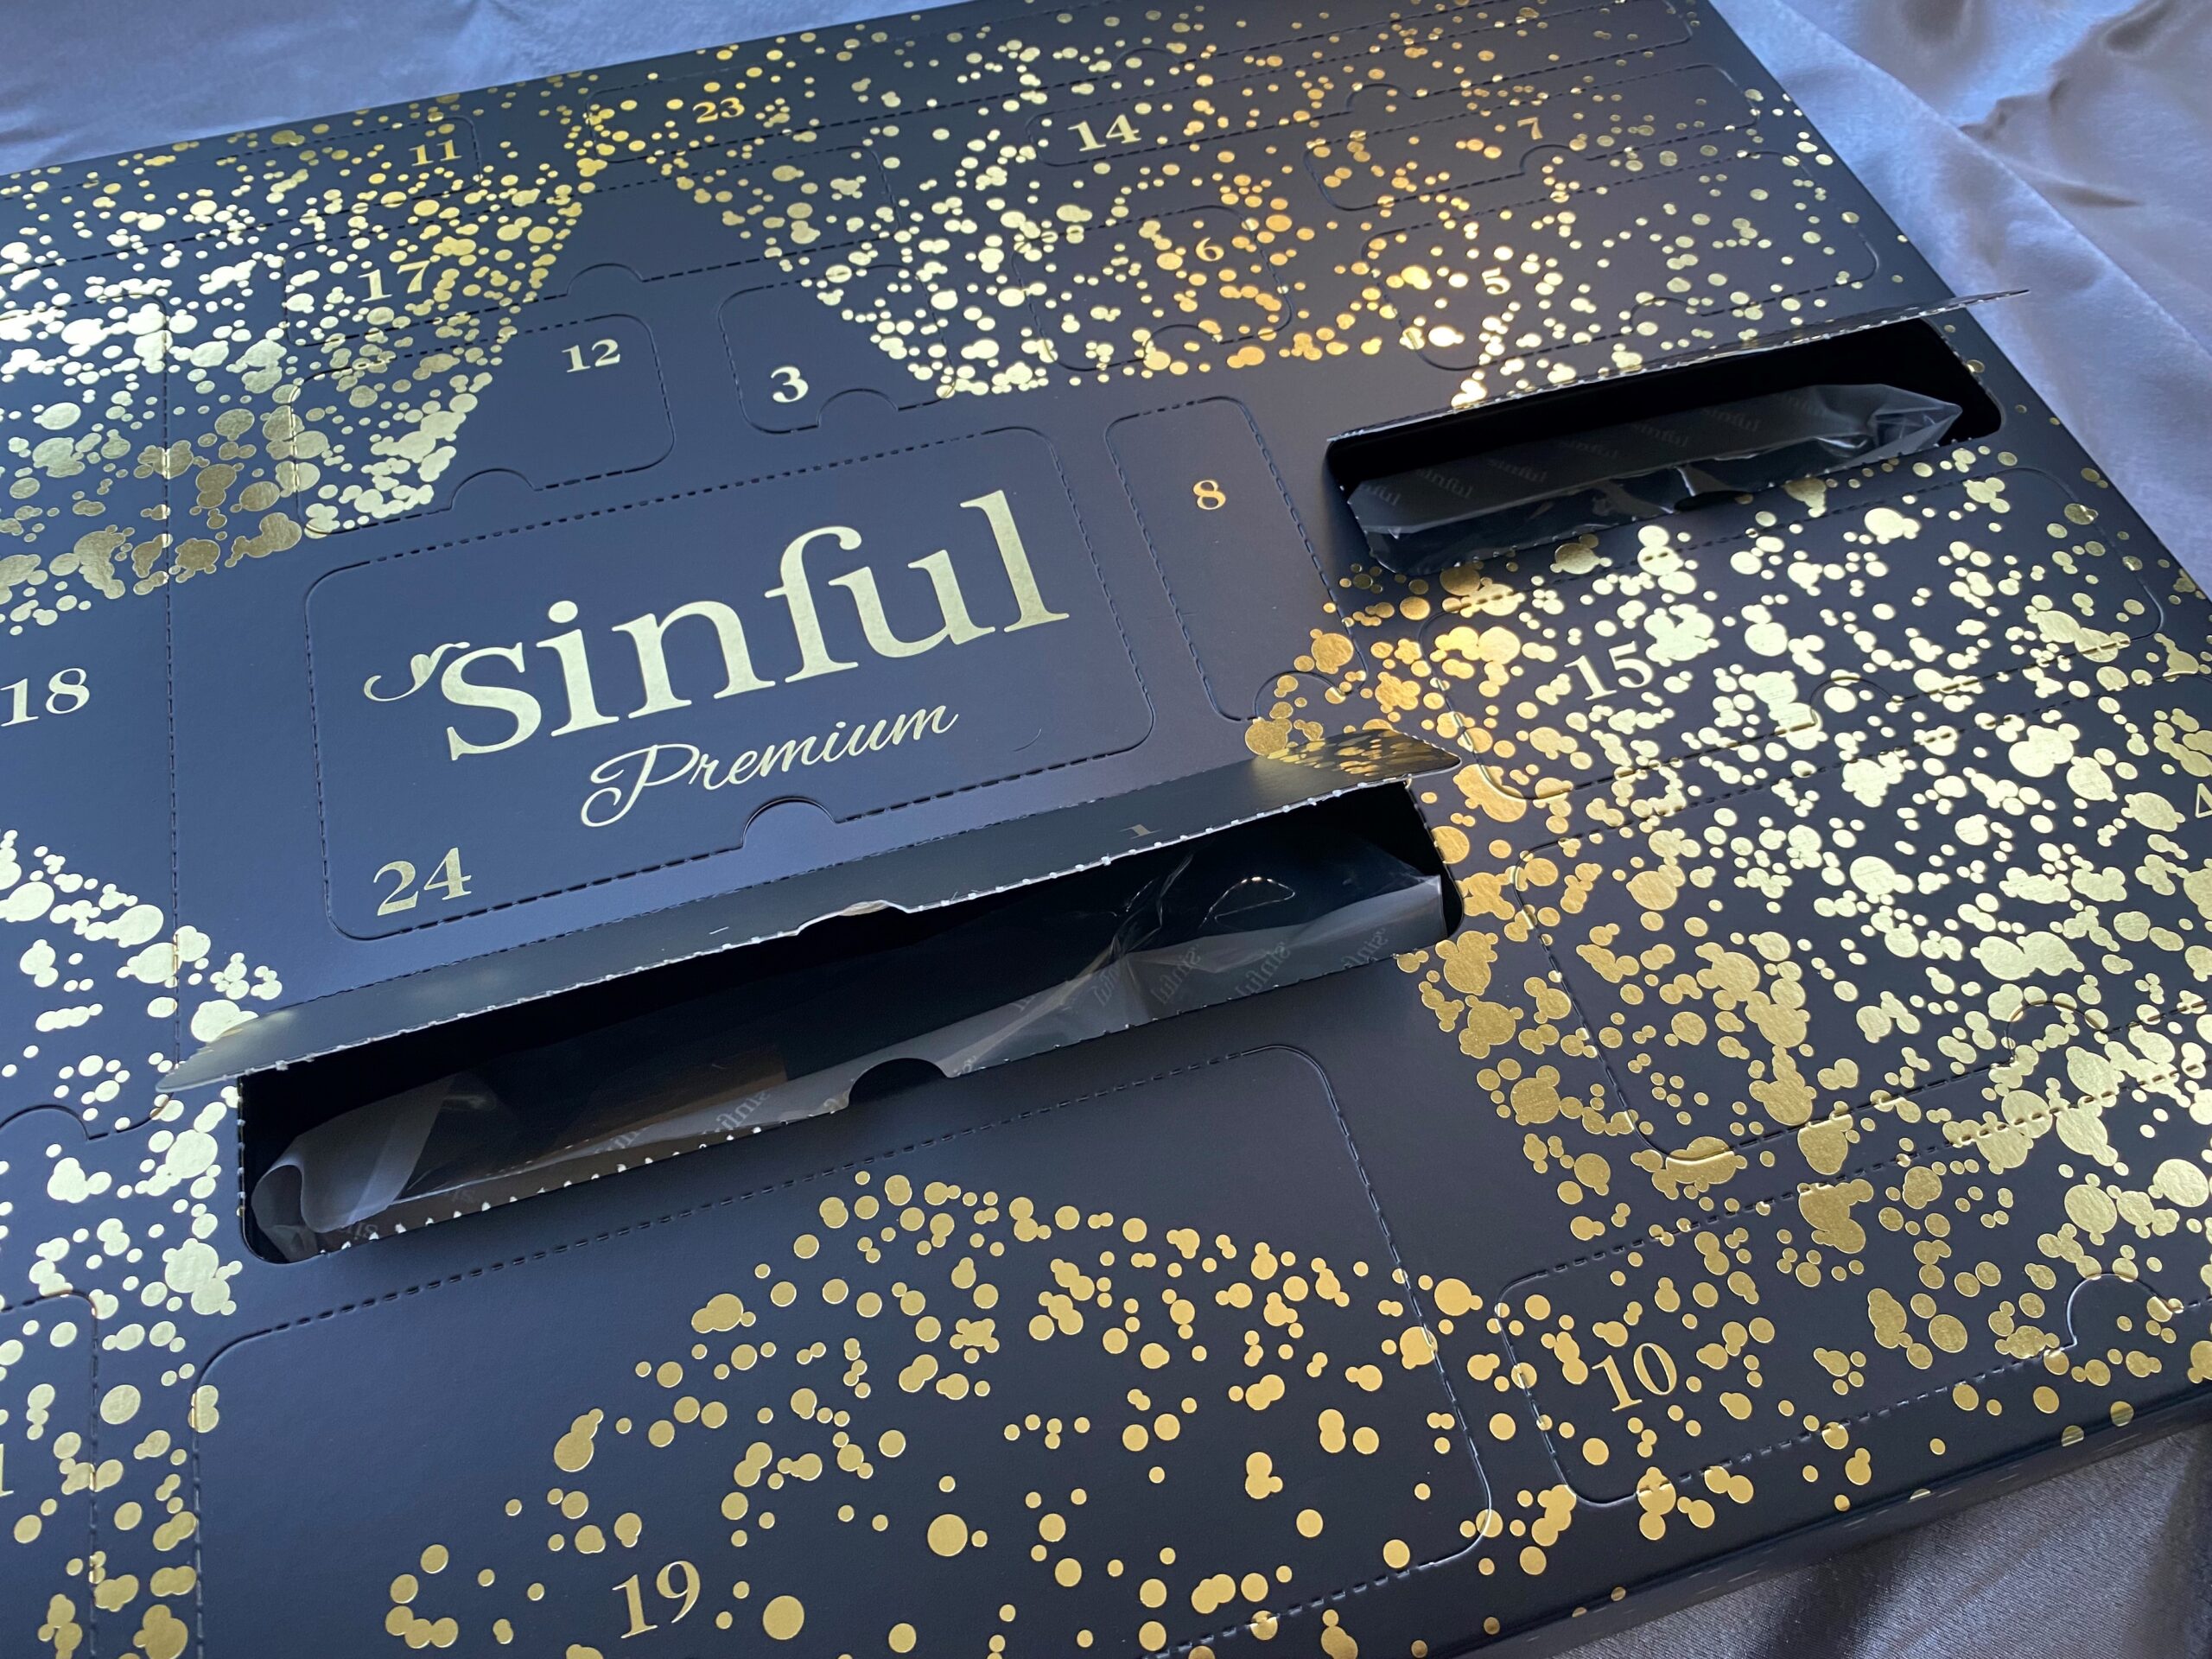 Sinful Premium14